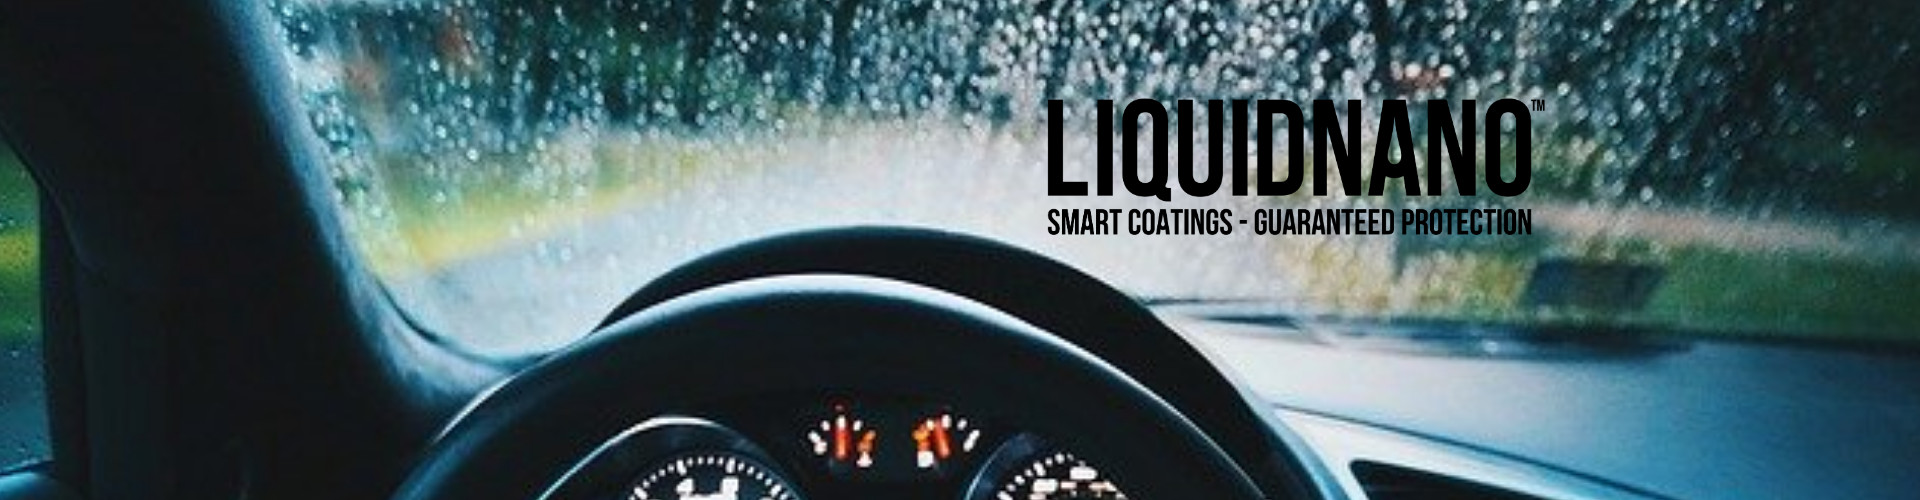 Liquid Nano